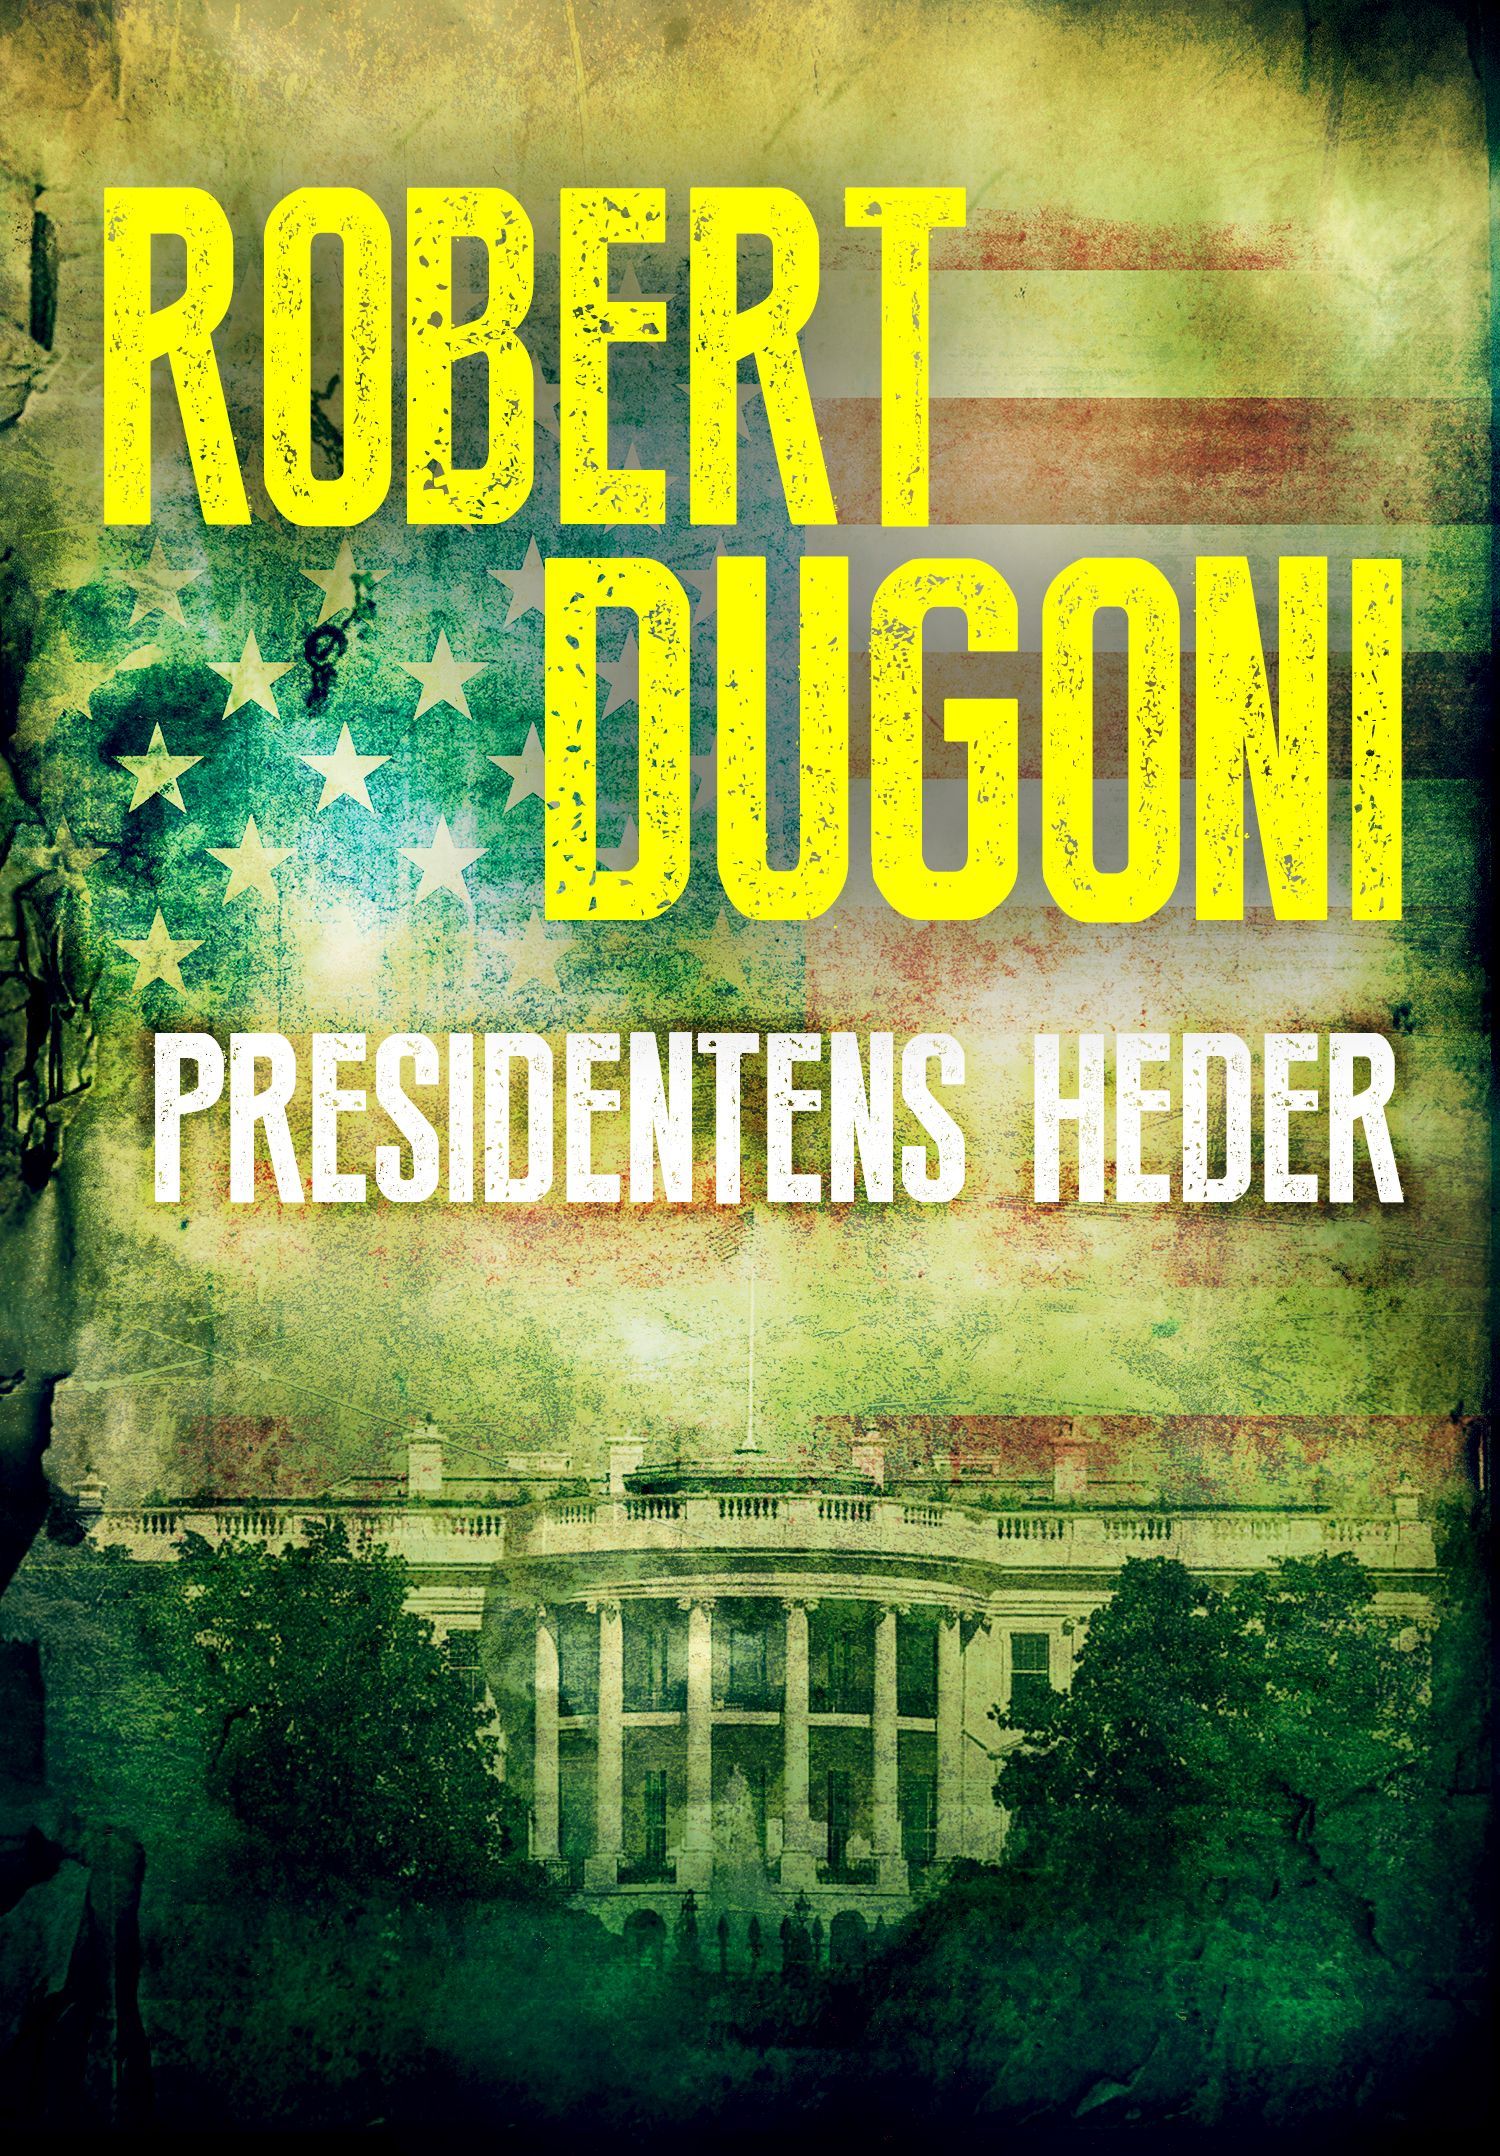 Presidentens heder, e-bok av Robert Dugoni